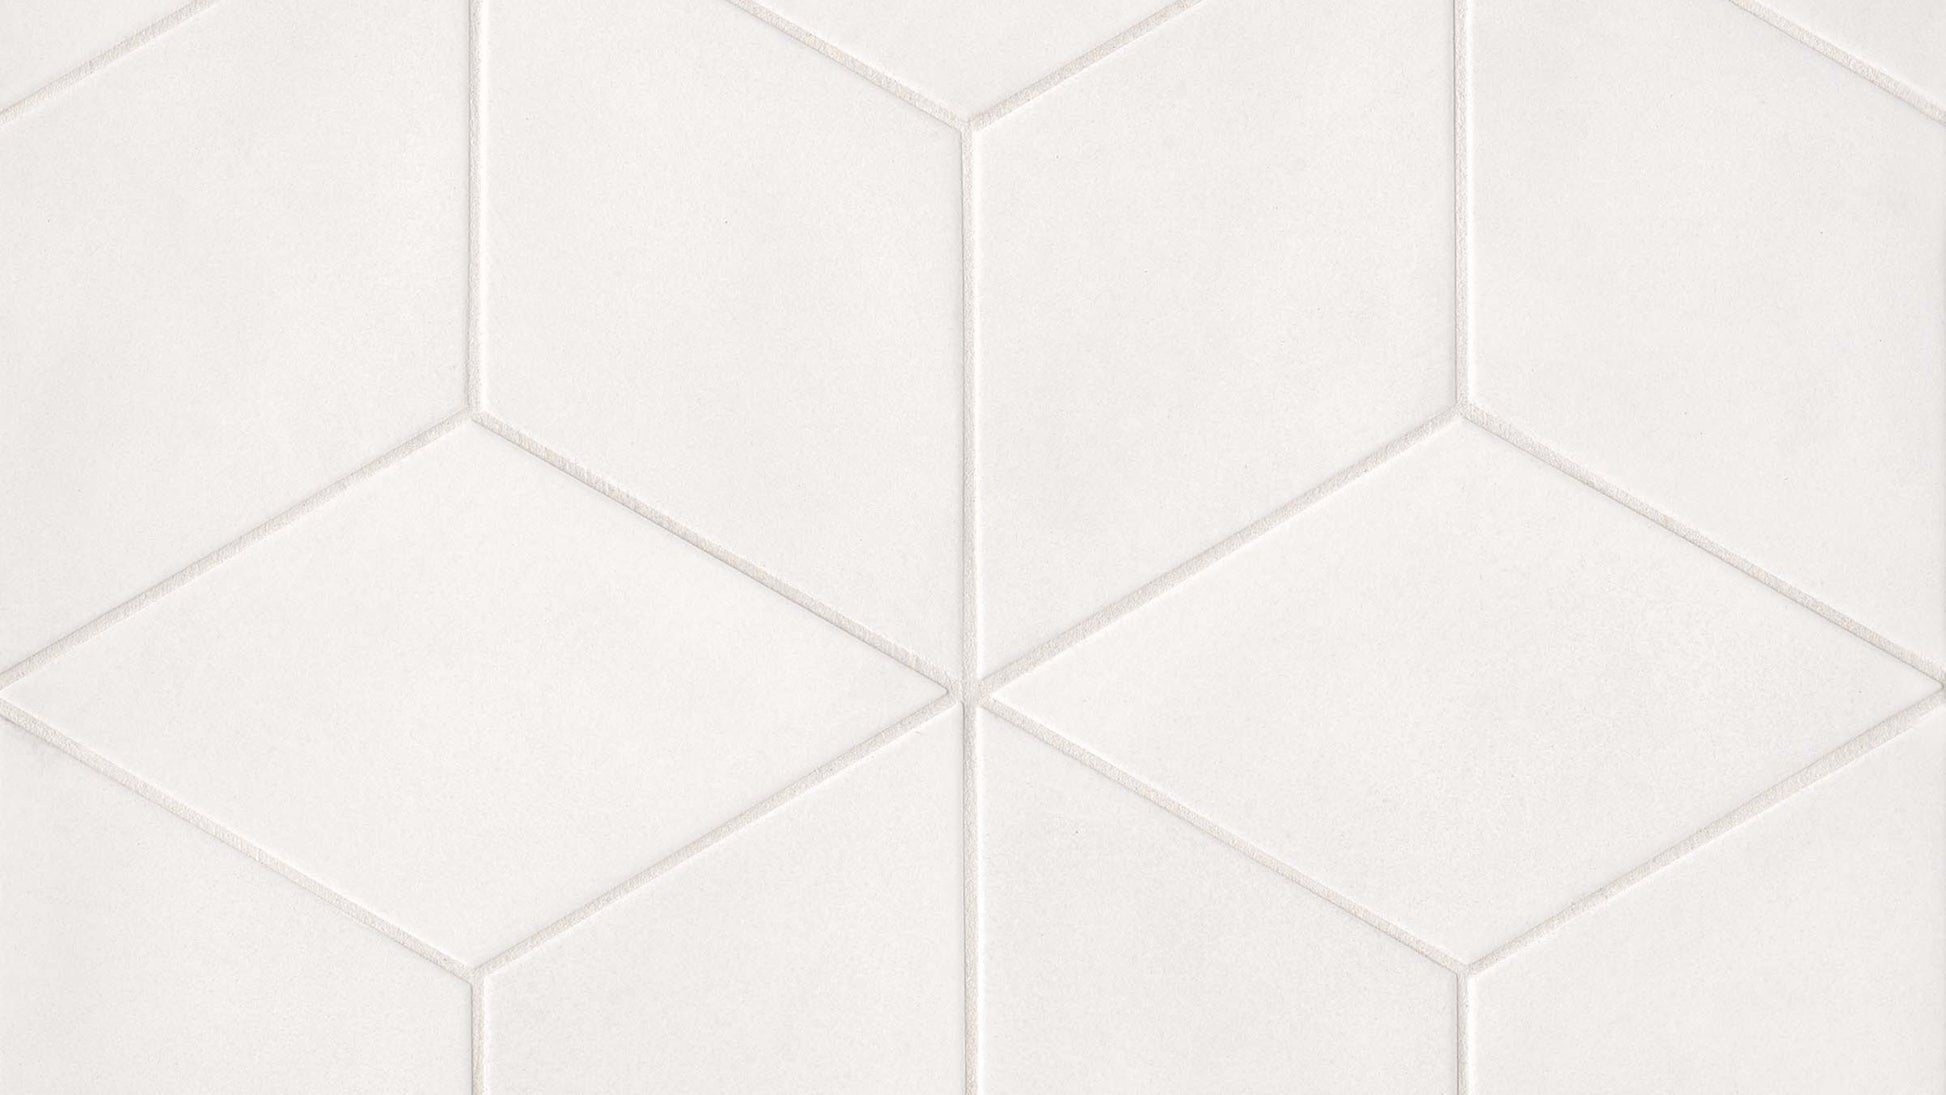 Rhomboid field time in white